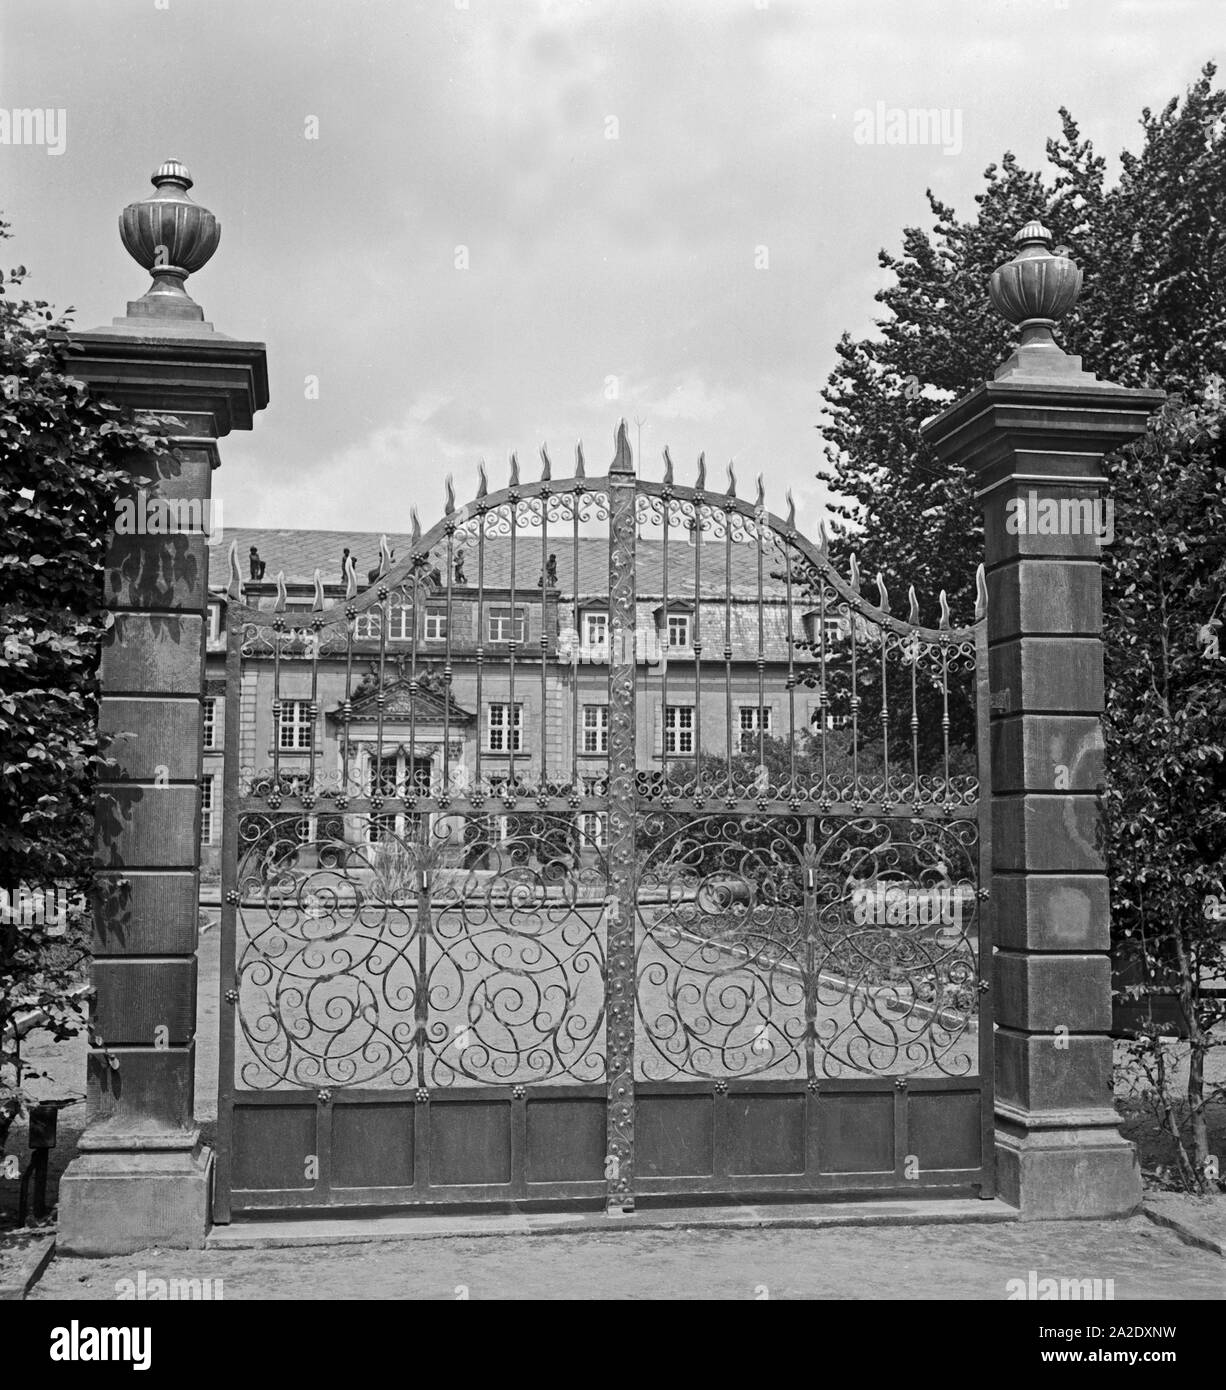 Das schwere Tor zum Schloß Herrenhausen bei Hannover, Deutschland 1930er Jahre. Das Tor zu Herrenhausen Schloss in der Nähe von Hannover, Deutschland 1930. Stockfoto